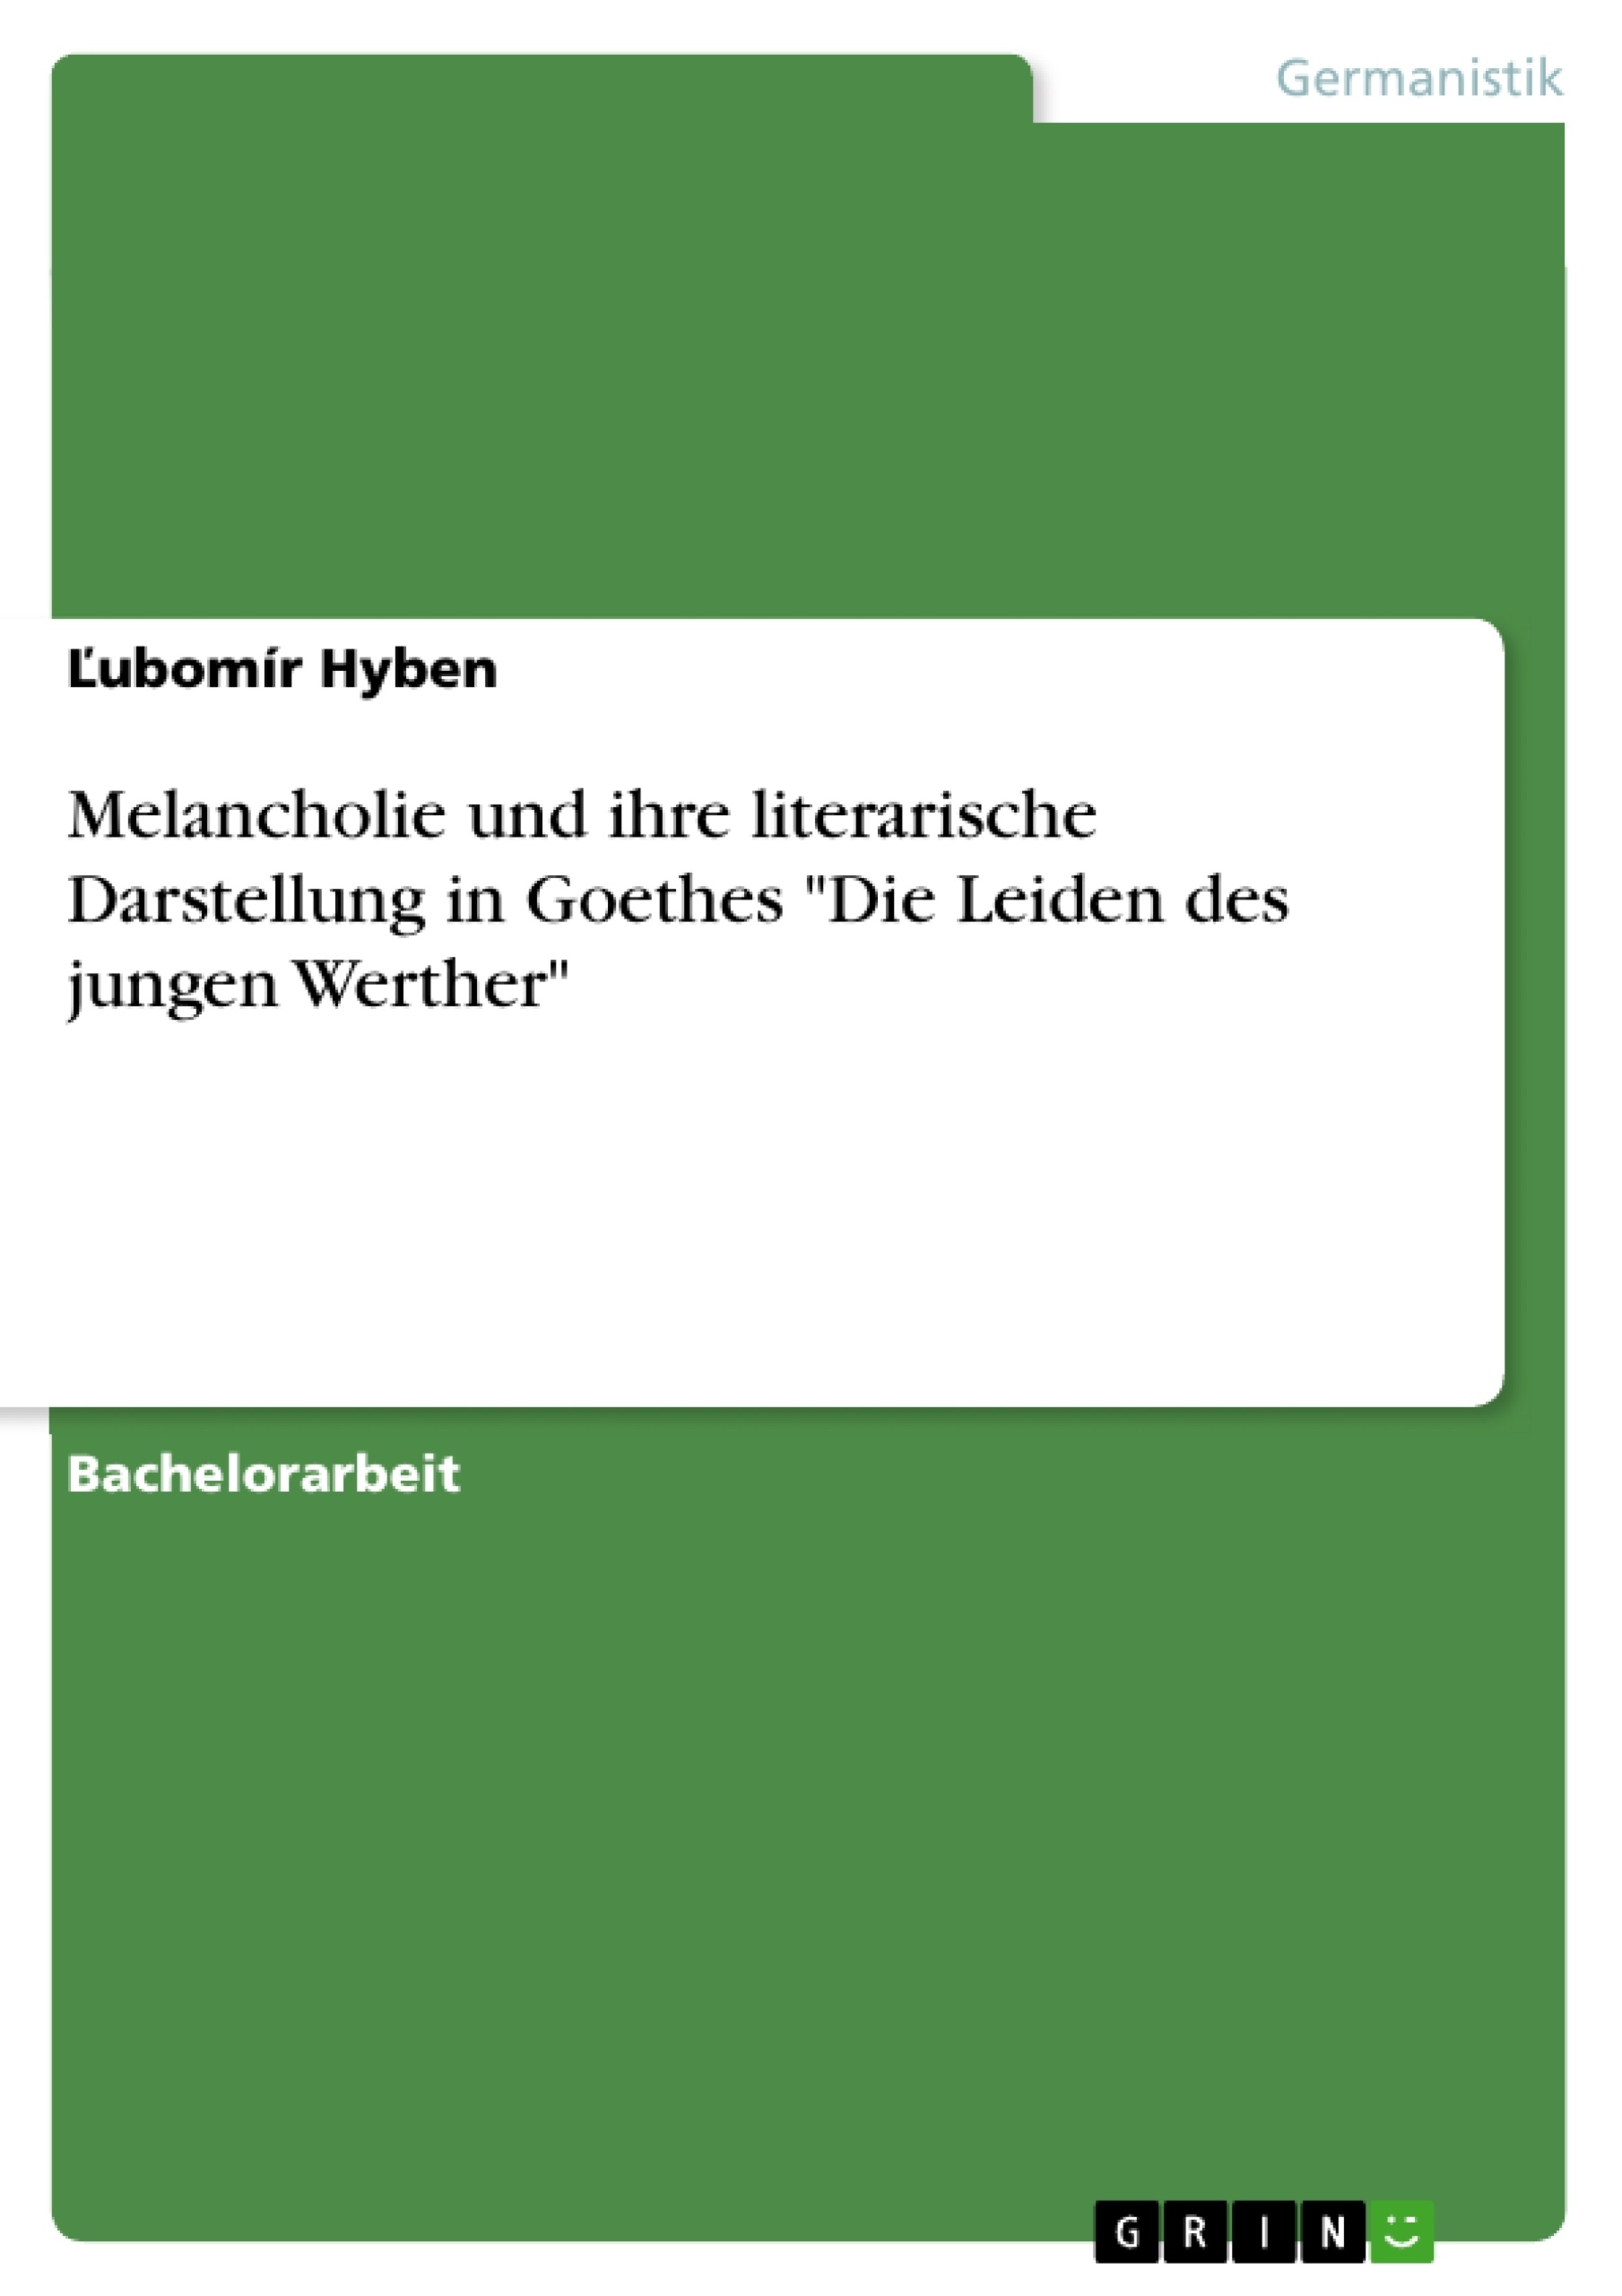 Titre: Melancholie und ihre literarische Darstellung in Goethes "Die Leiden des jungen Werther"